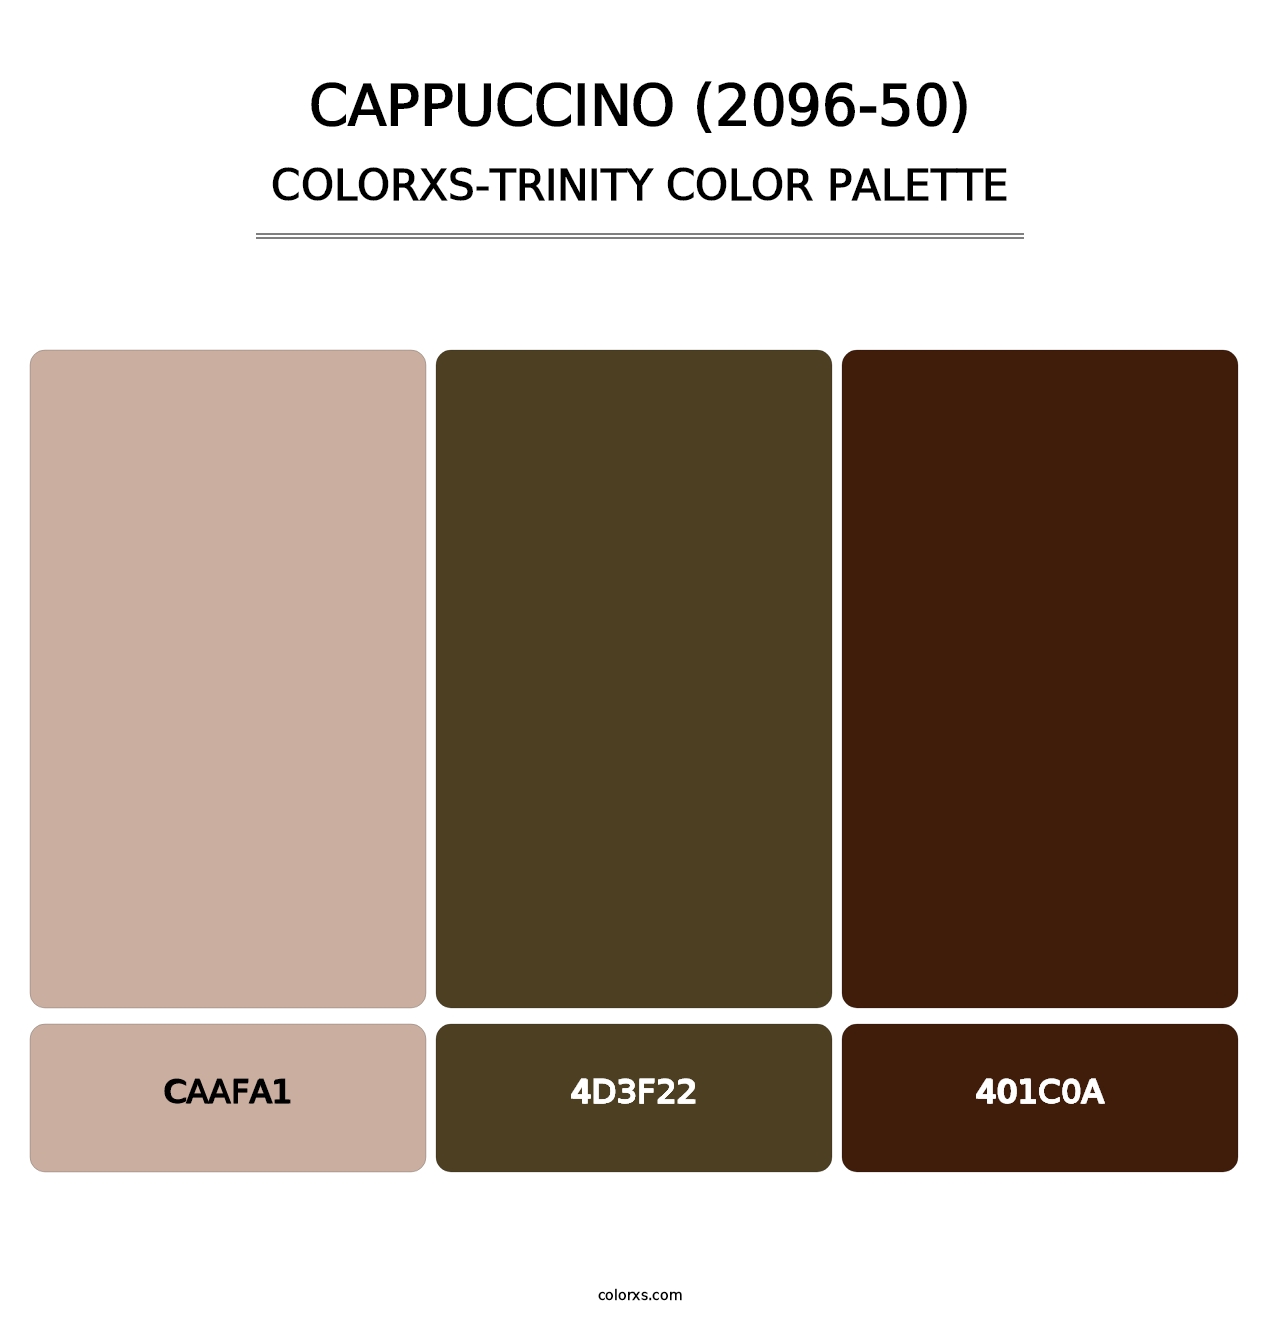 Cappuccino (2096-50) - Colorxs Trinity Palette